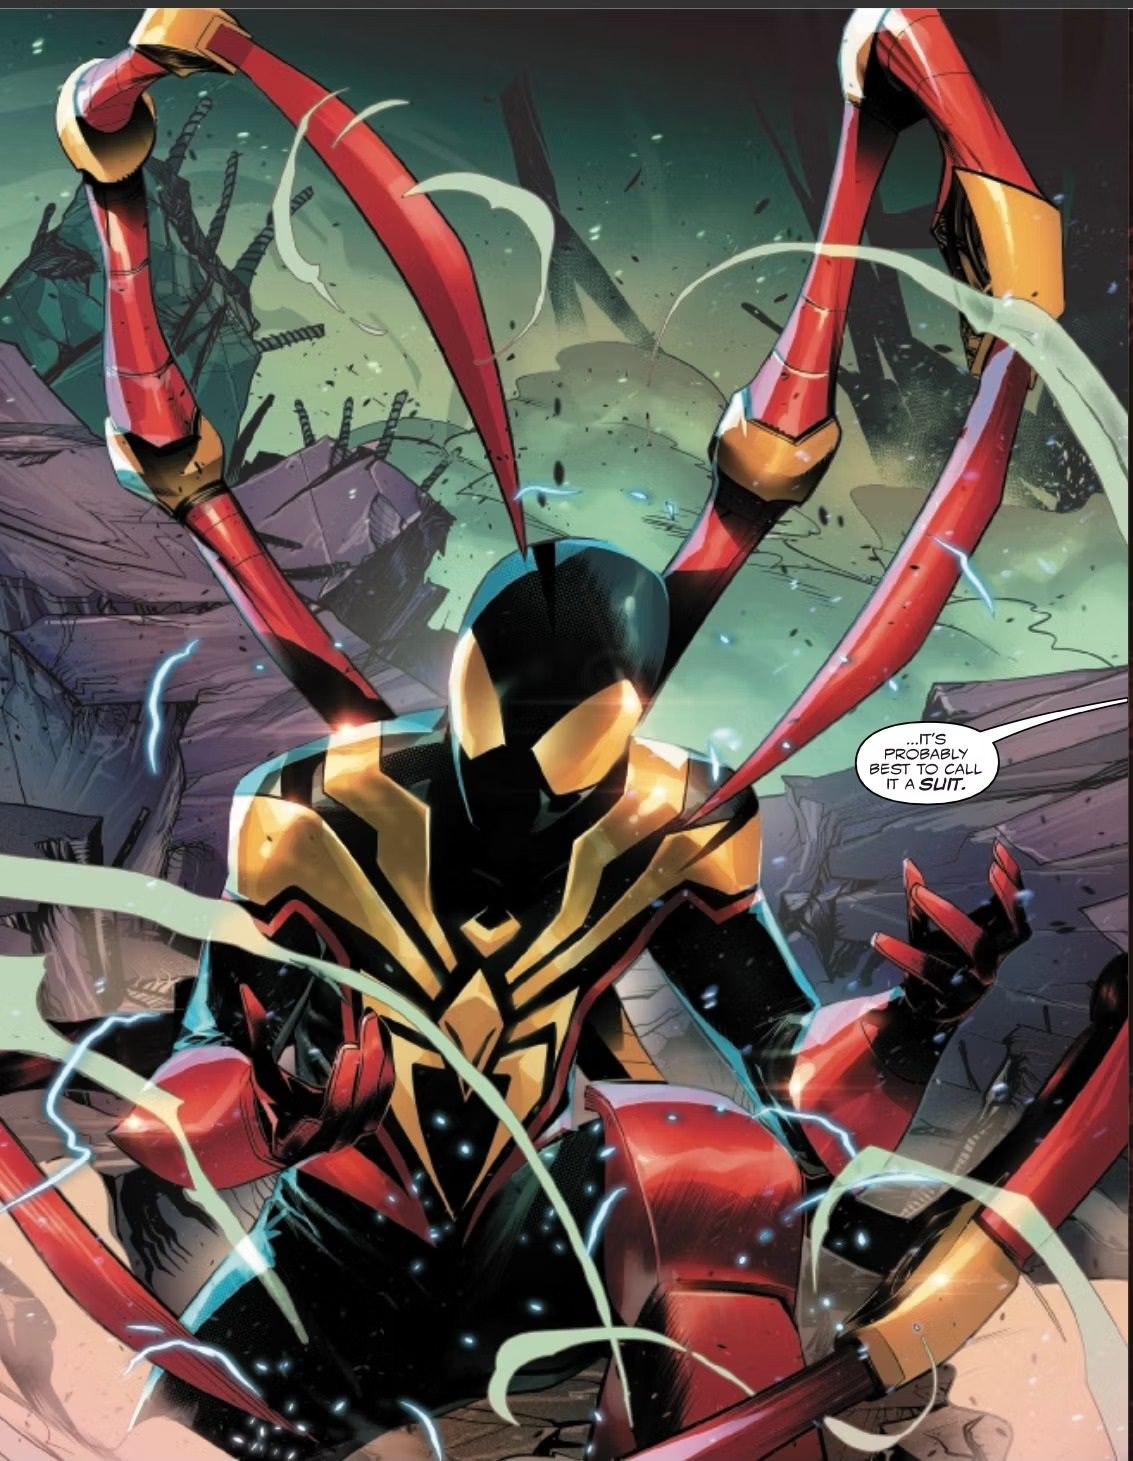 Marvel's Spider-Man: Miles Morales faz o que muito jogo tem medo